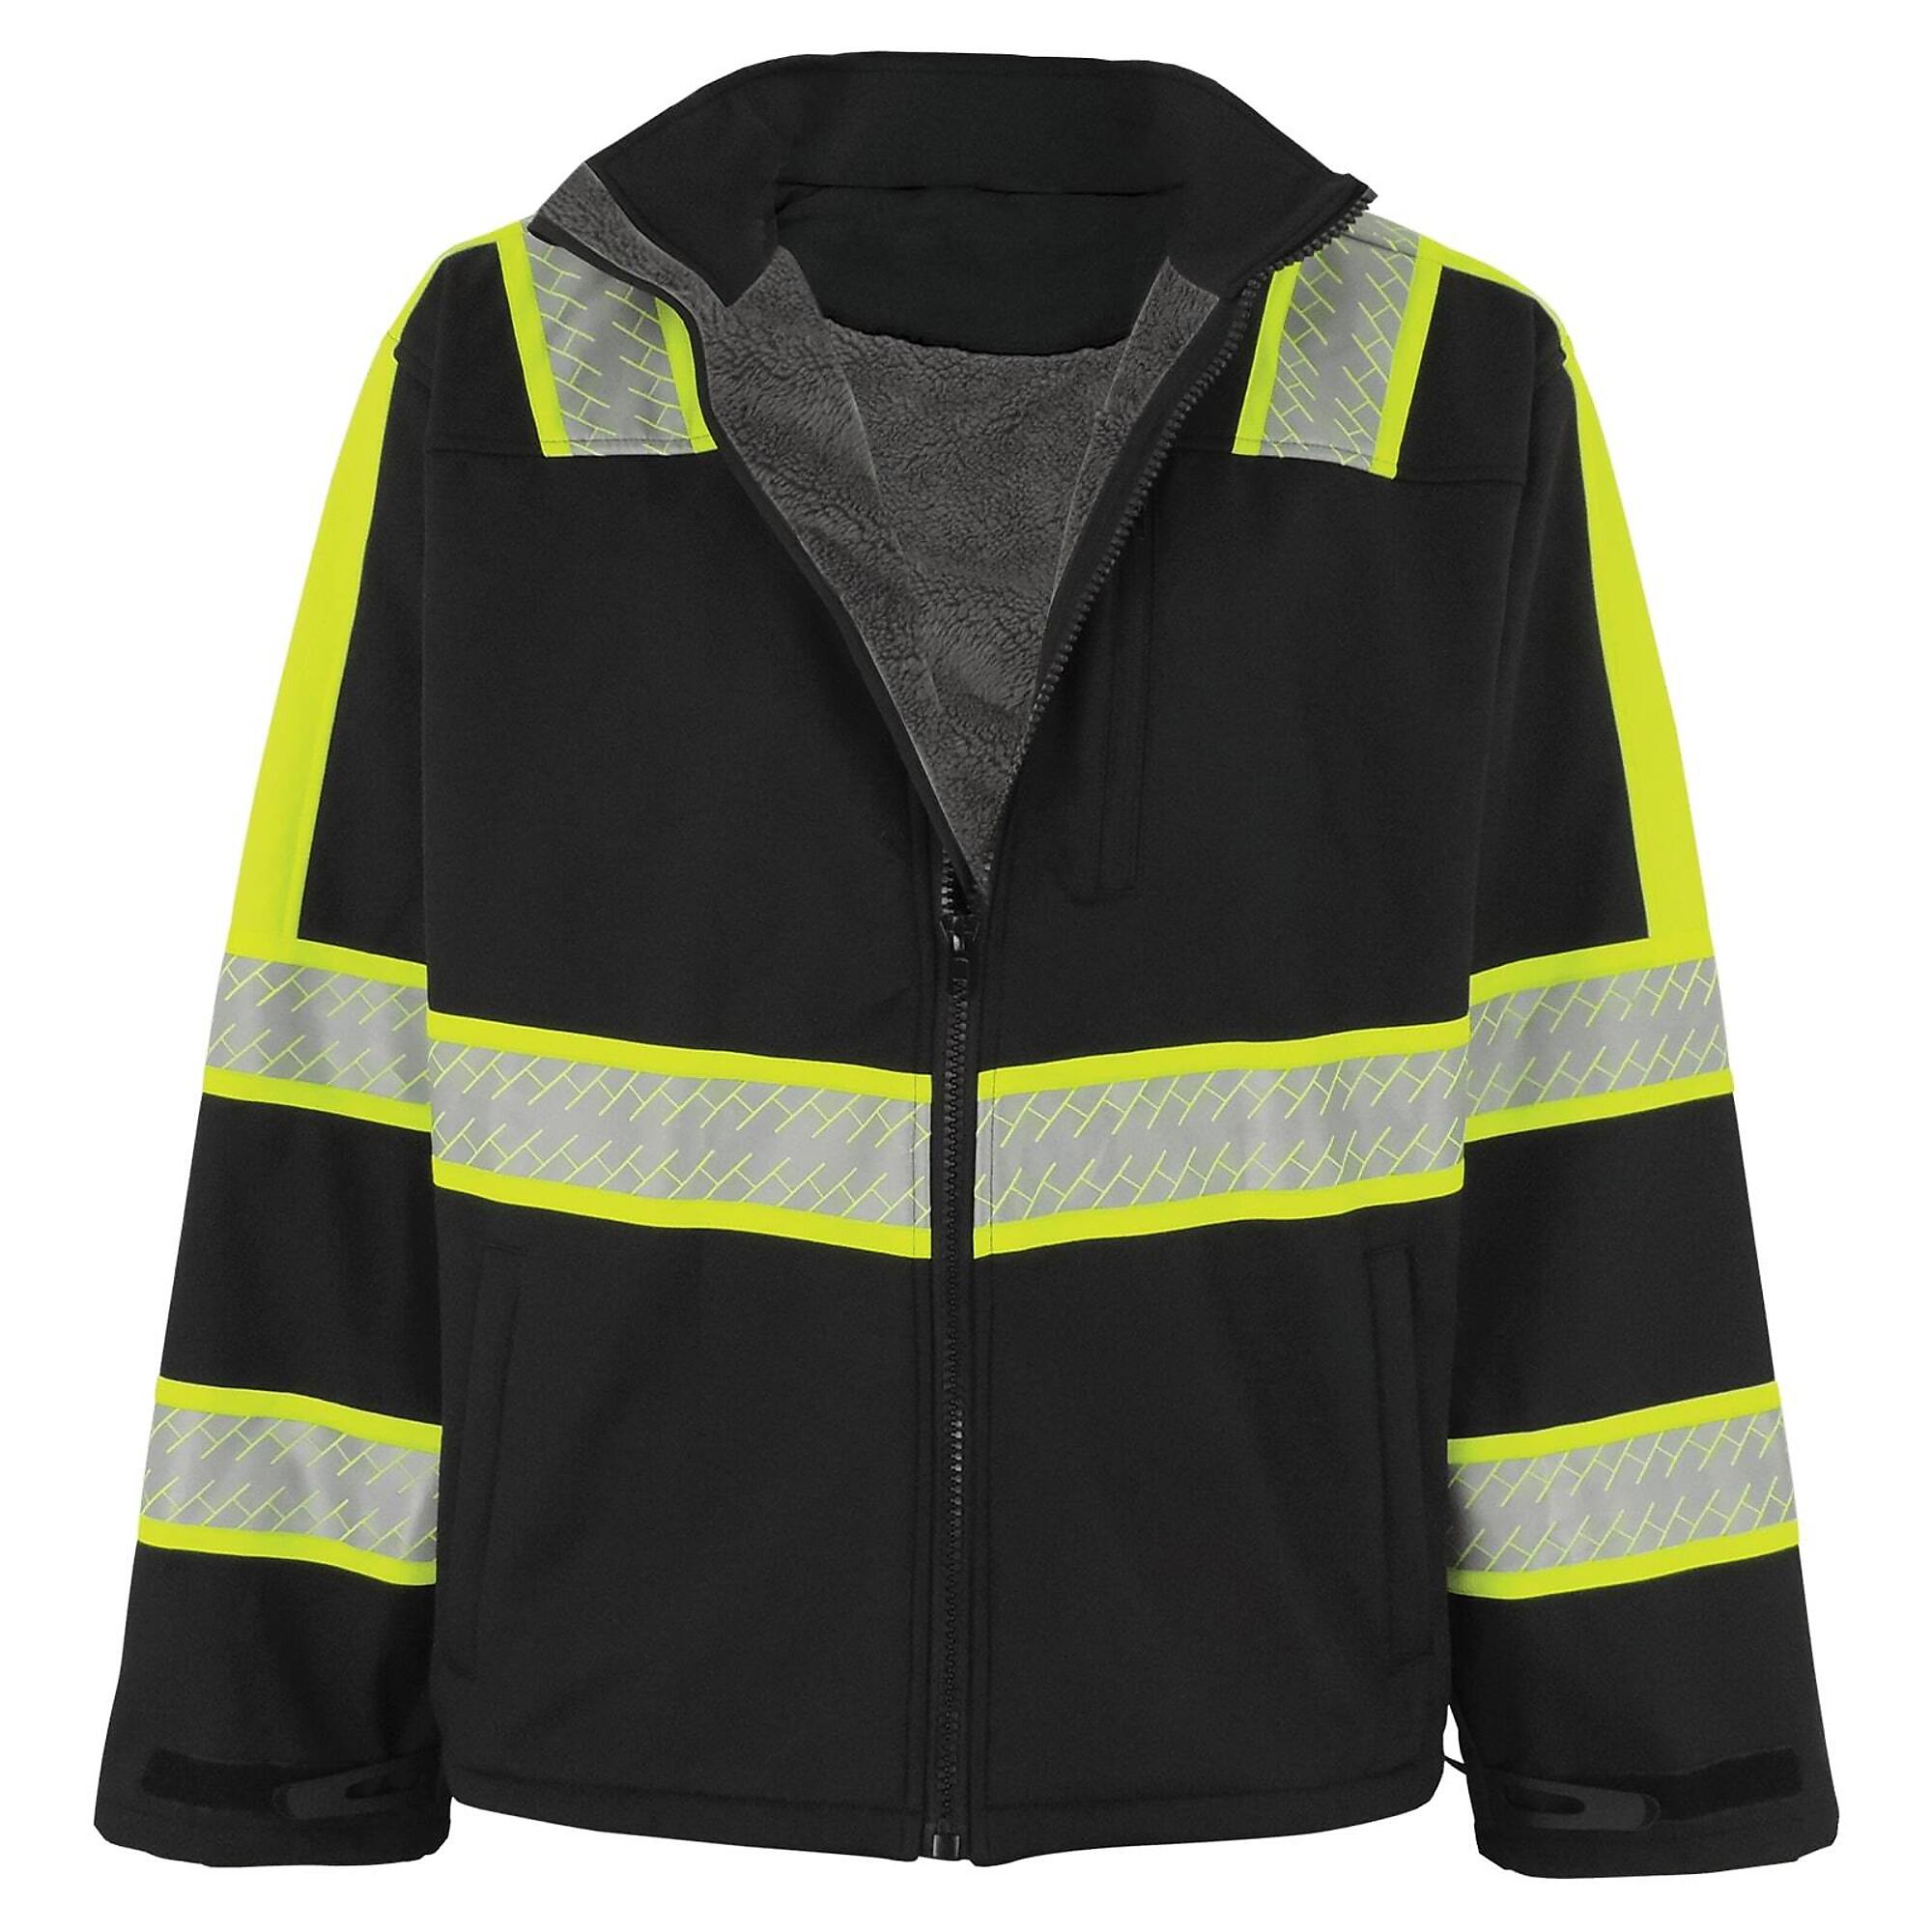 FrogWear, Prem Enhanced Visibility Black Sherpa-Lined Jacket, Size 2XLT, Color Black with Silver Reflective, Model EV-SJ1-2XLT